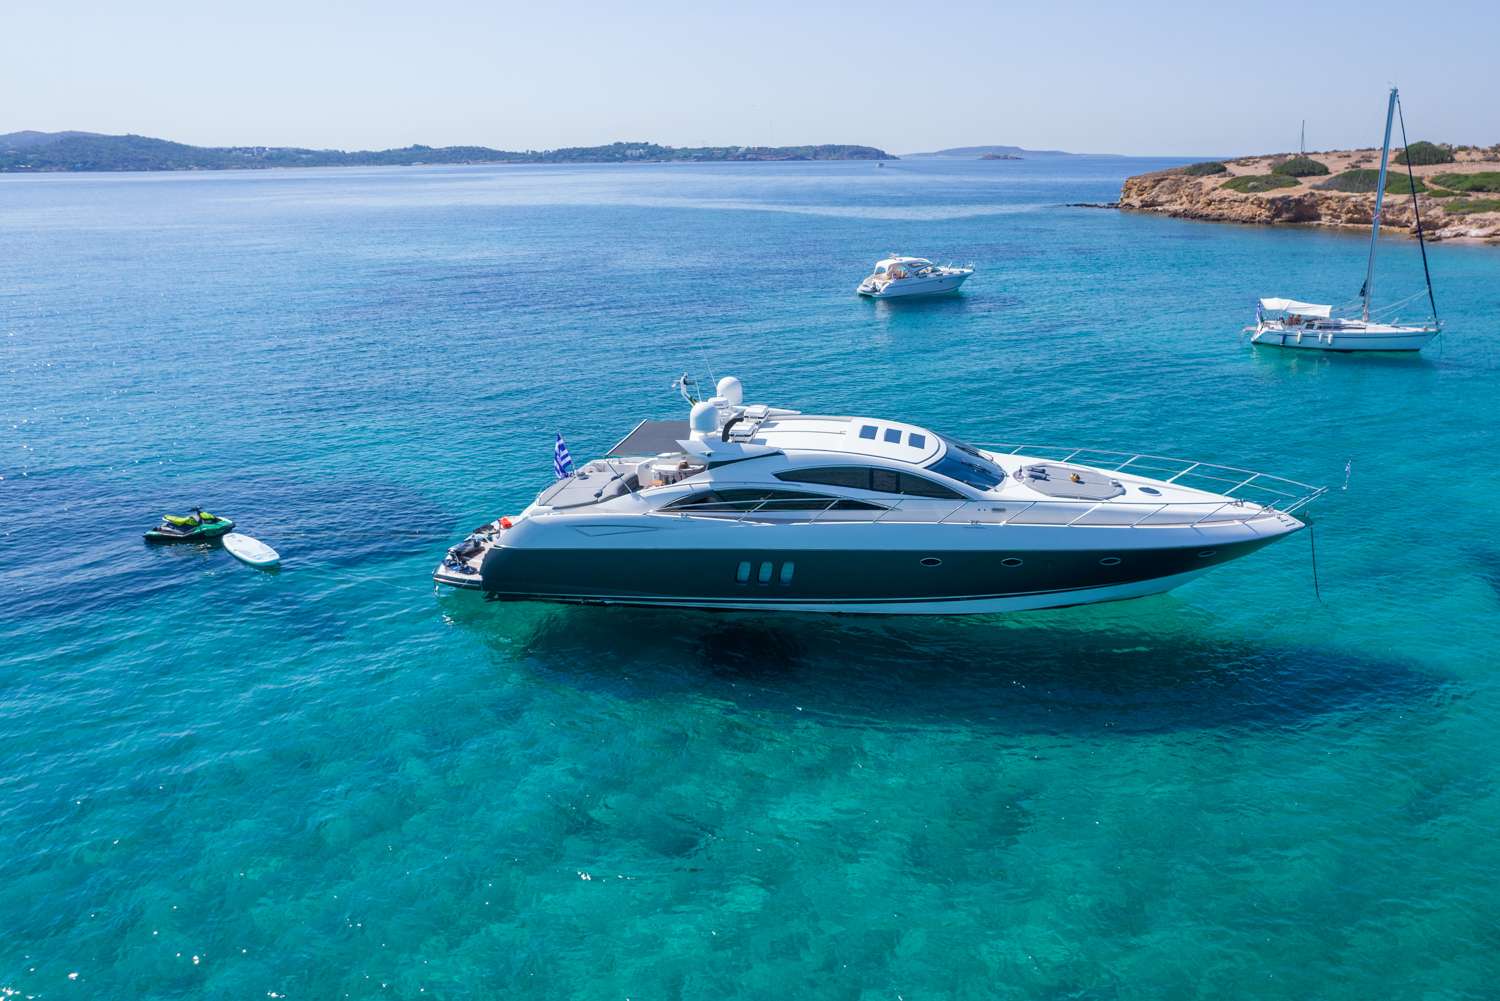 Elentari - Yacht Charter Sami & Boat hire in Greece 1